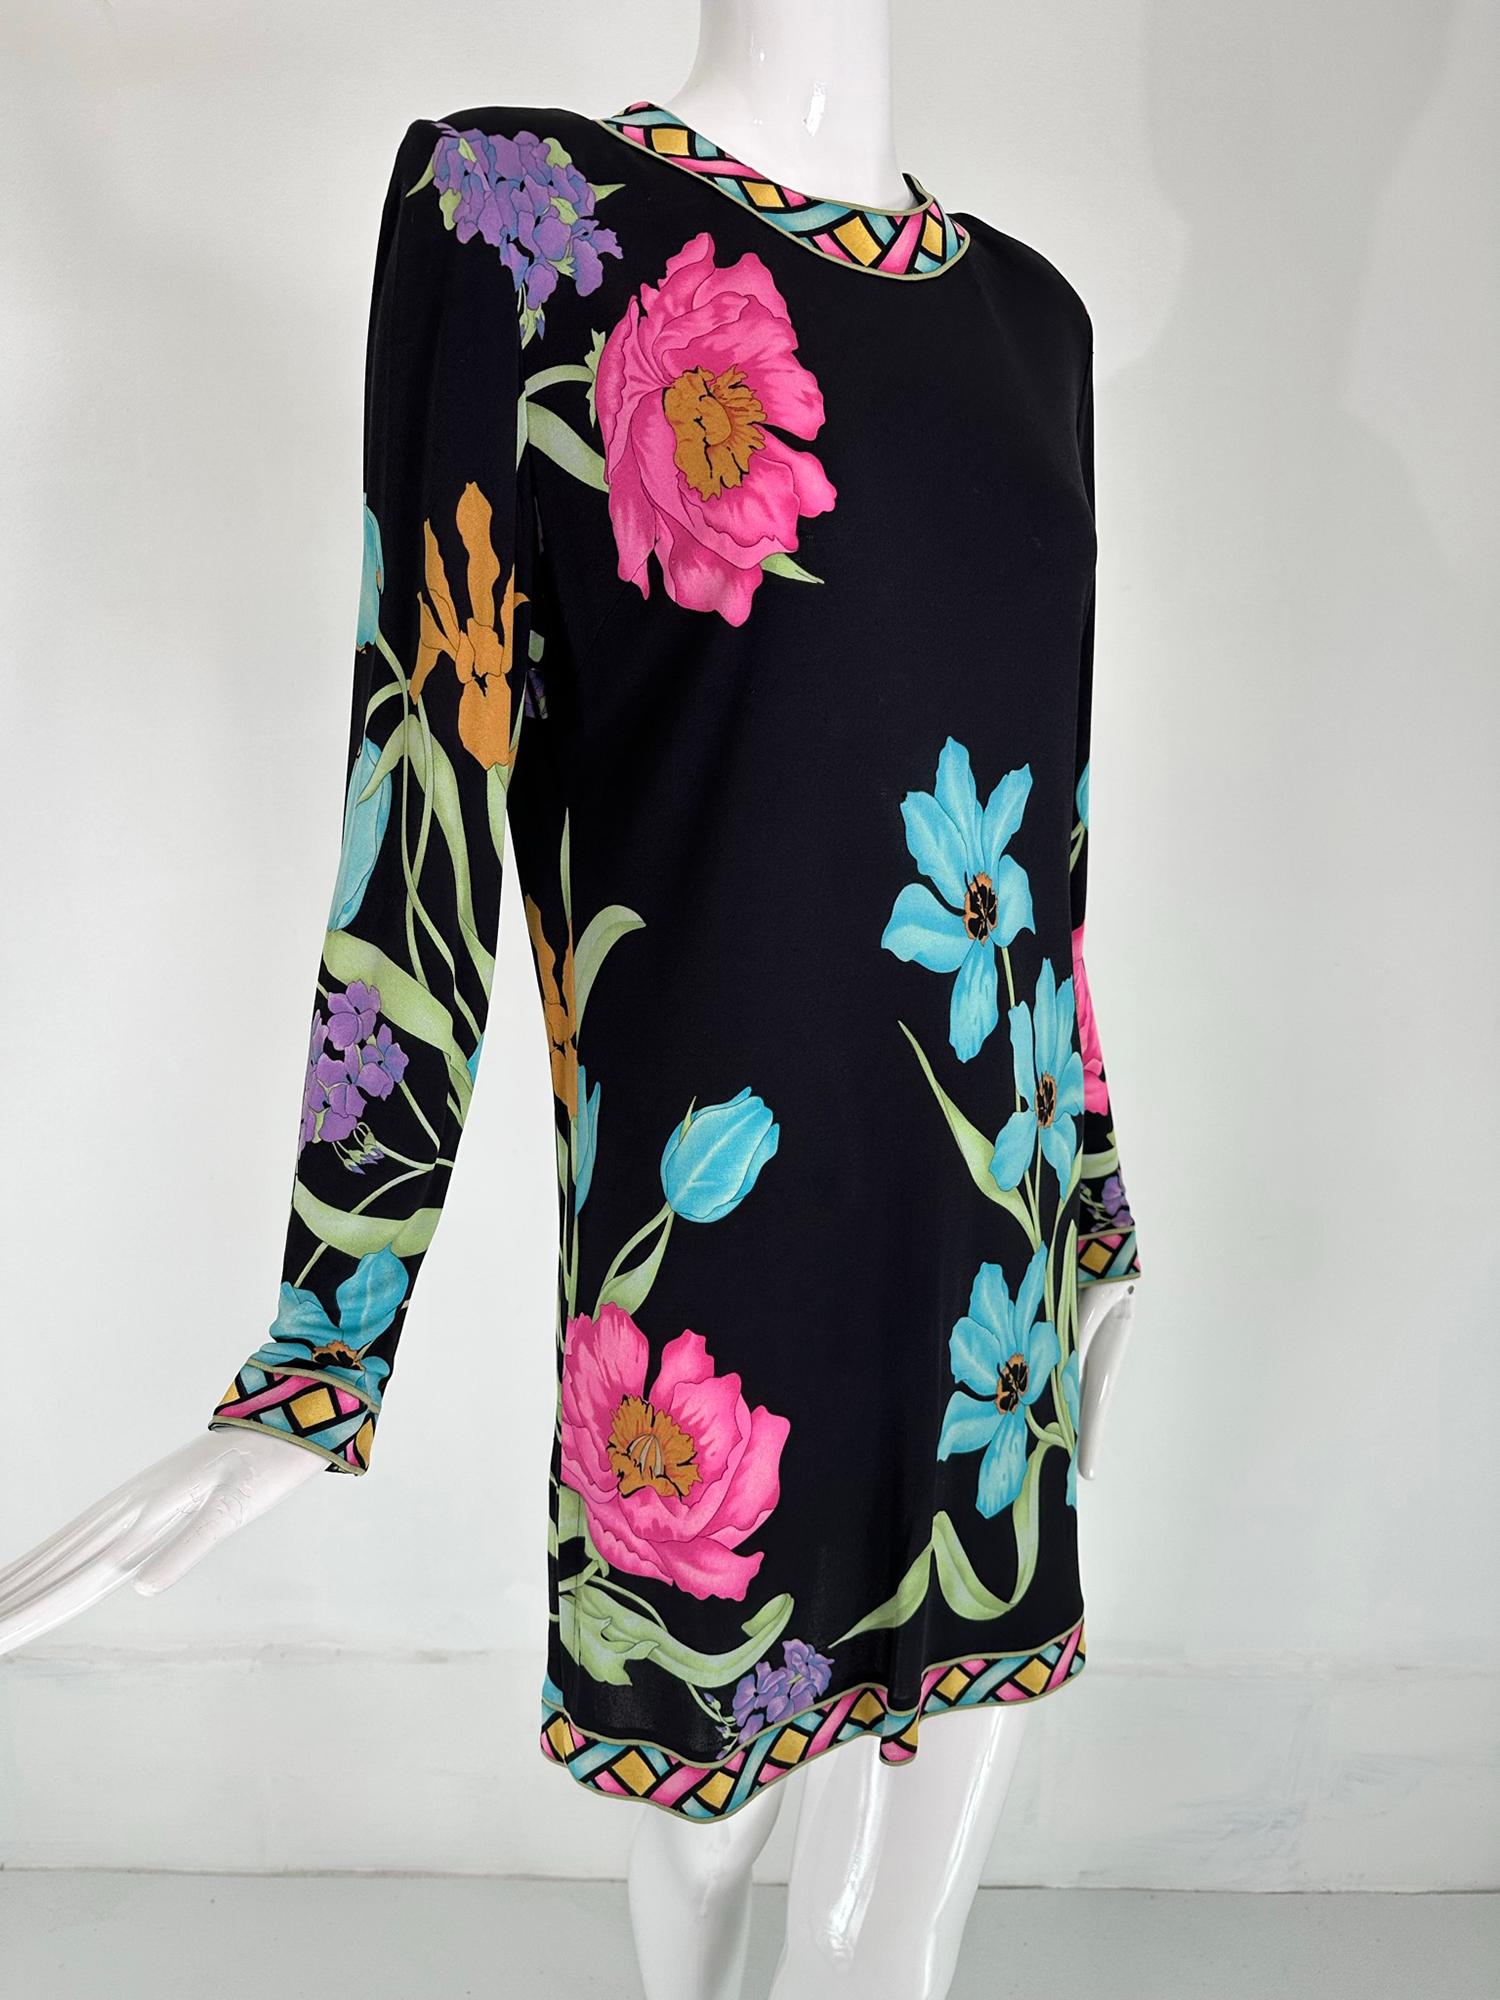 Bessi spectaculaire robe tunique en soie florale vibrante US 12. Datant des années 1990, cette magnifique robe peut être portée comme une tunique ou une mini robe. Robe à col bijou imprimée d'une bande et à manches longues. La robe est dotée de